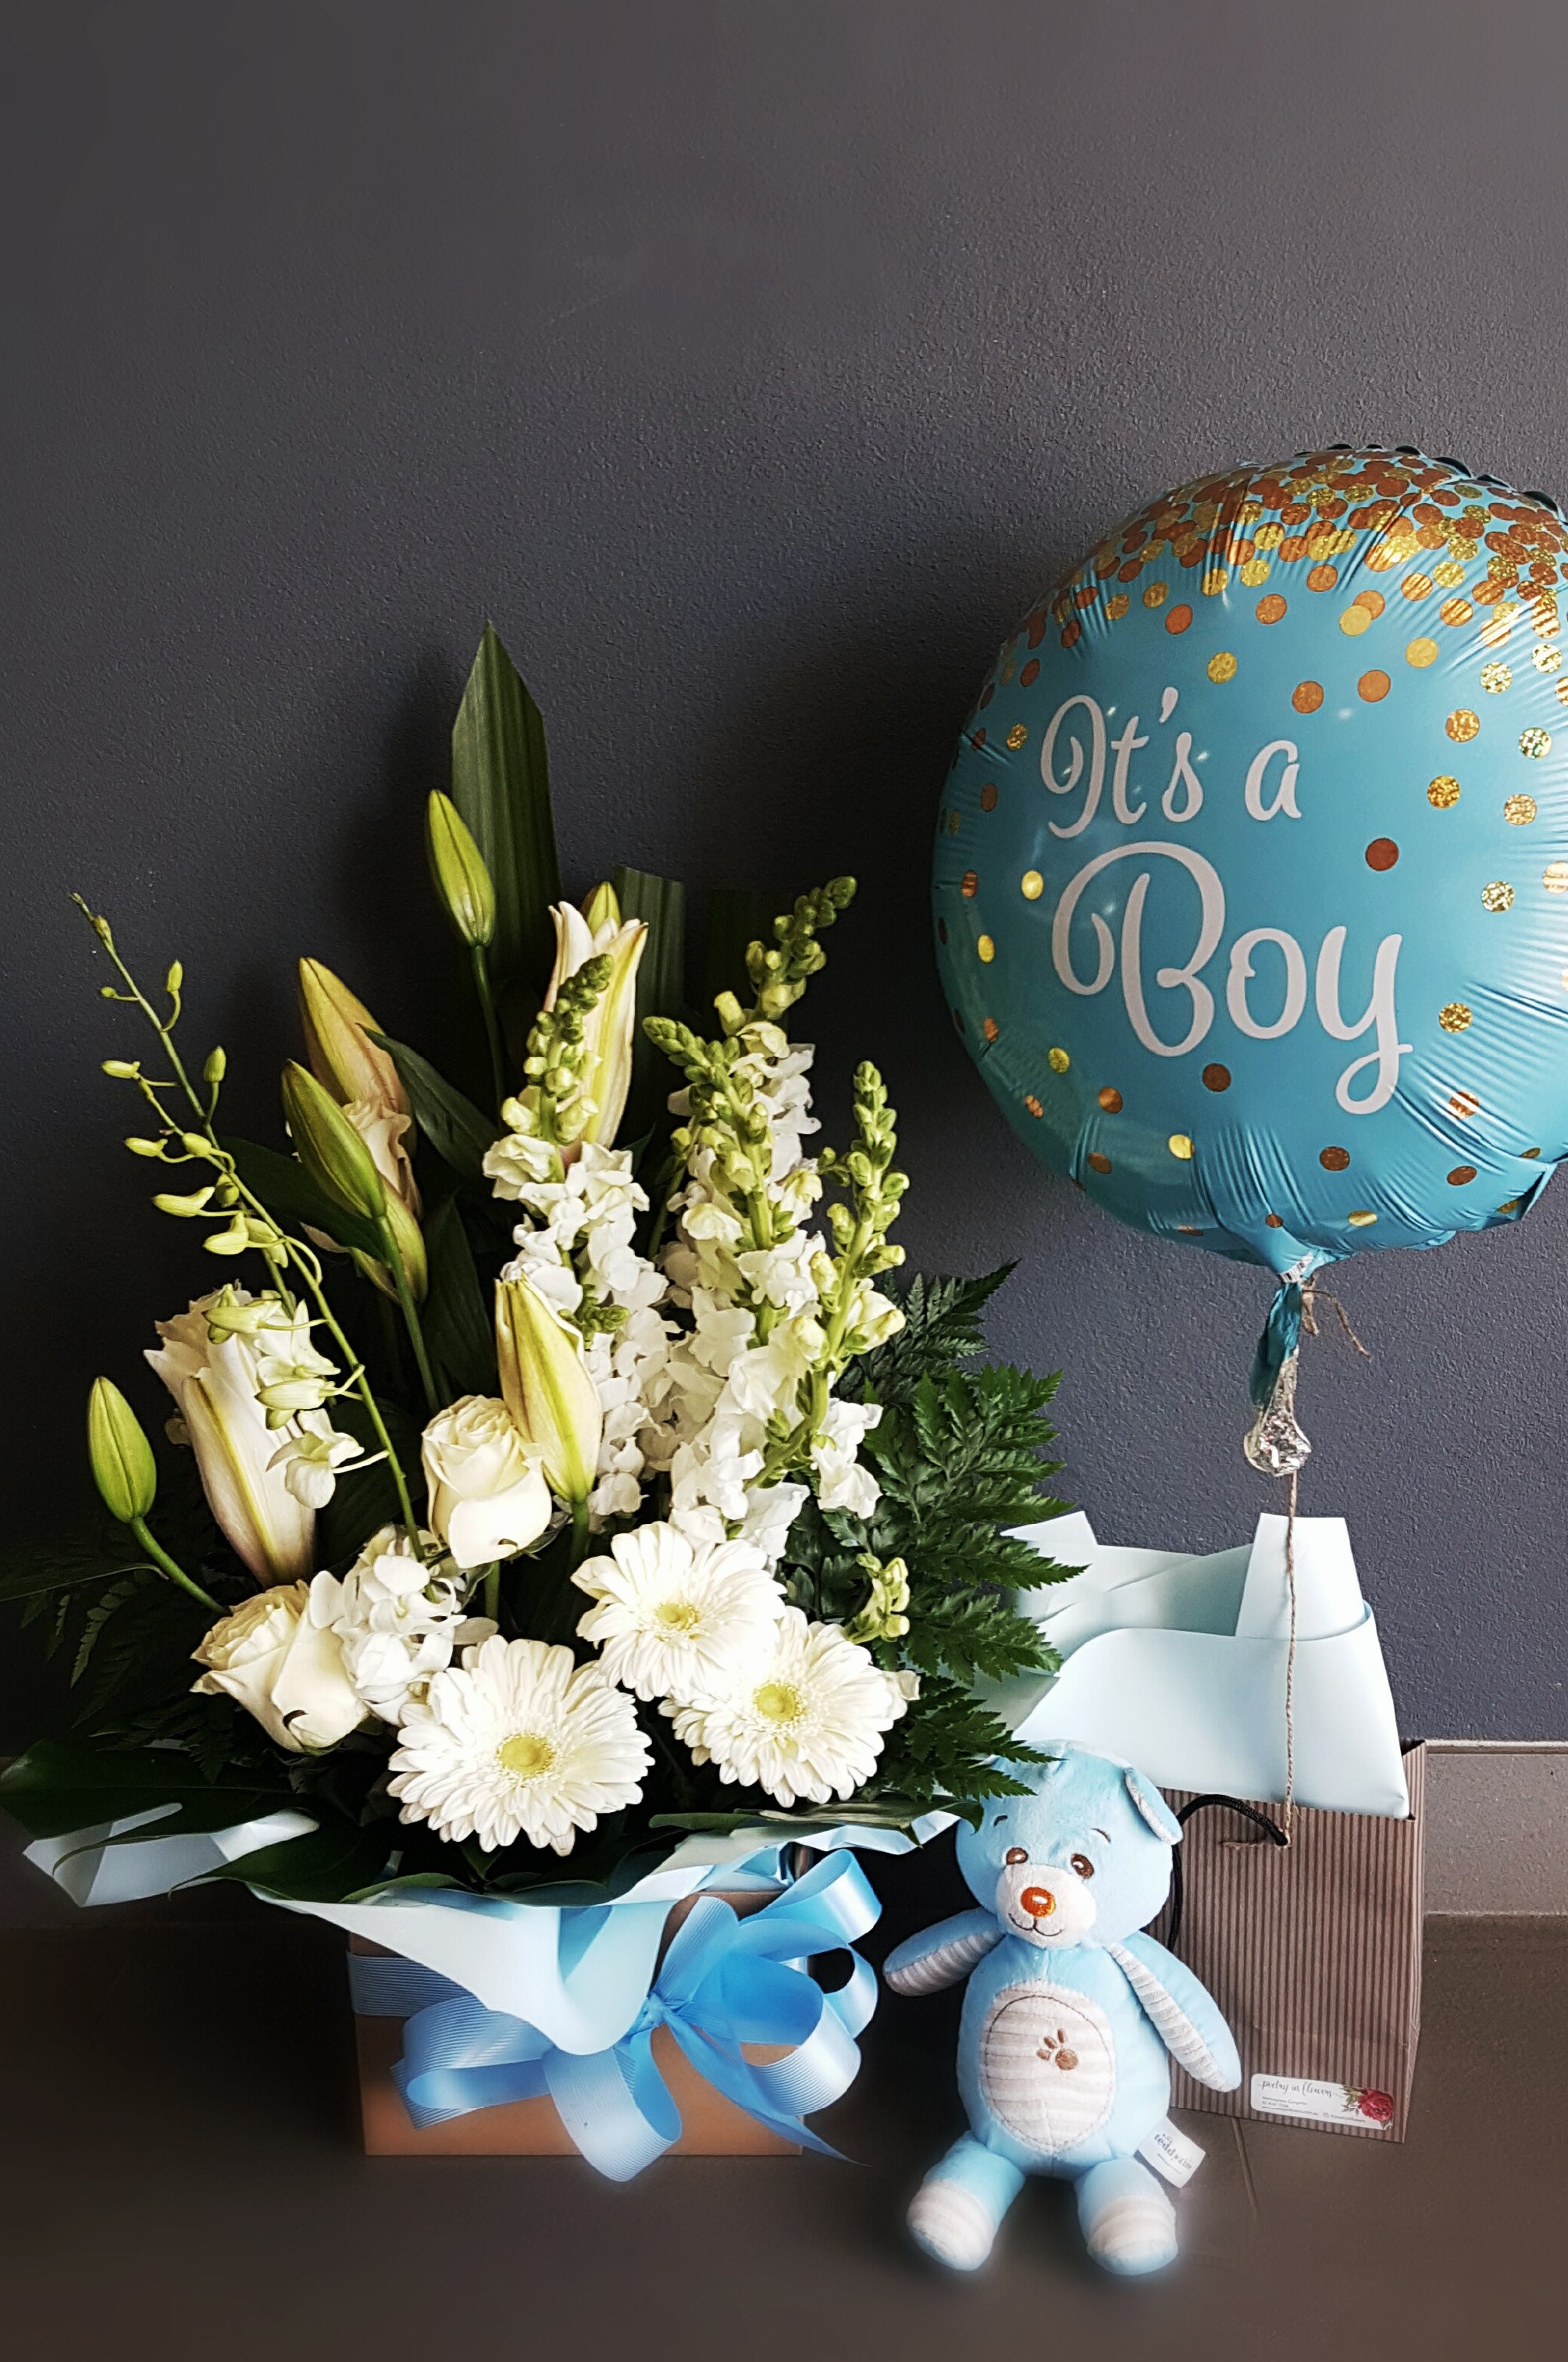 It's a Boy! – Poetry in Flowers